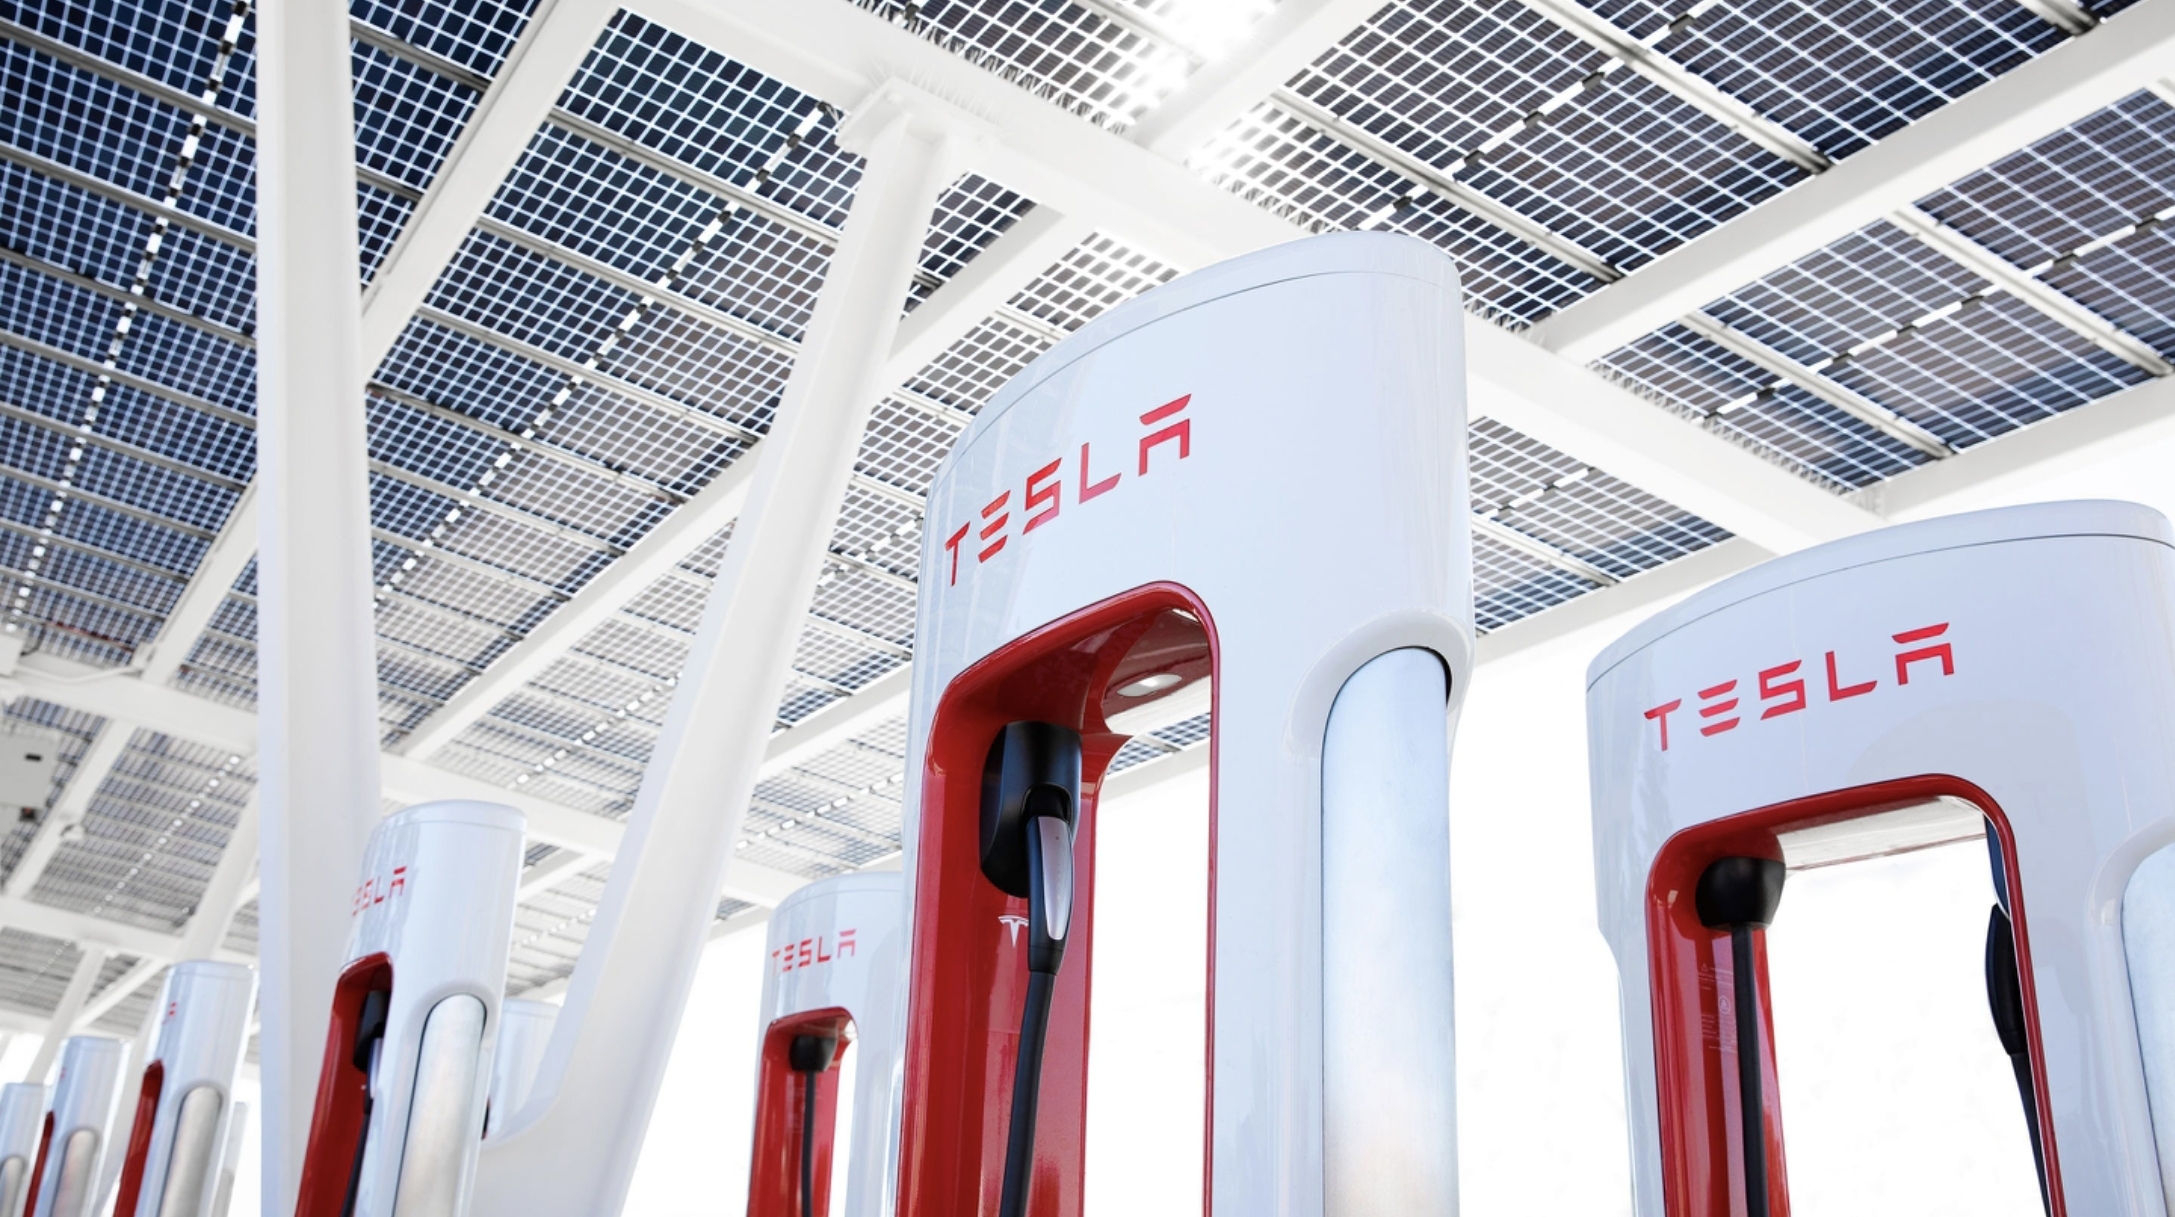 Das Supercharger-Team von Tesla ist als nächstes dran